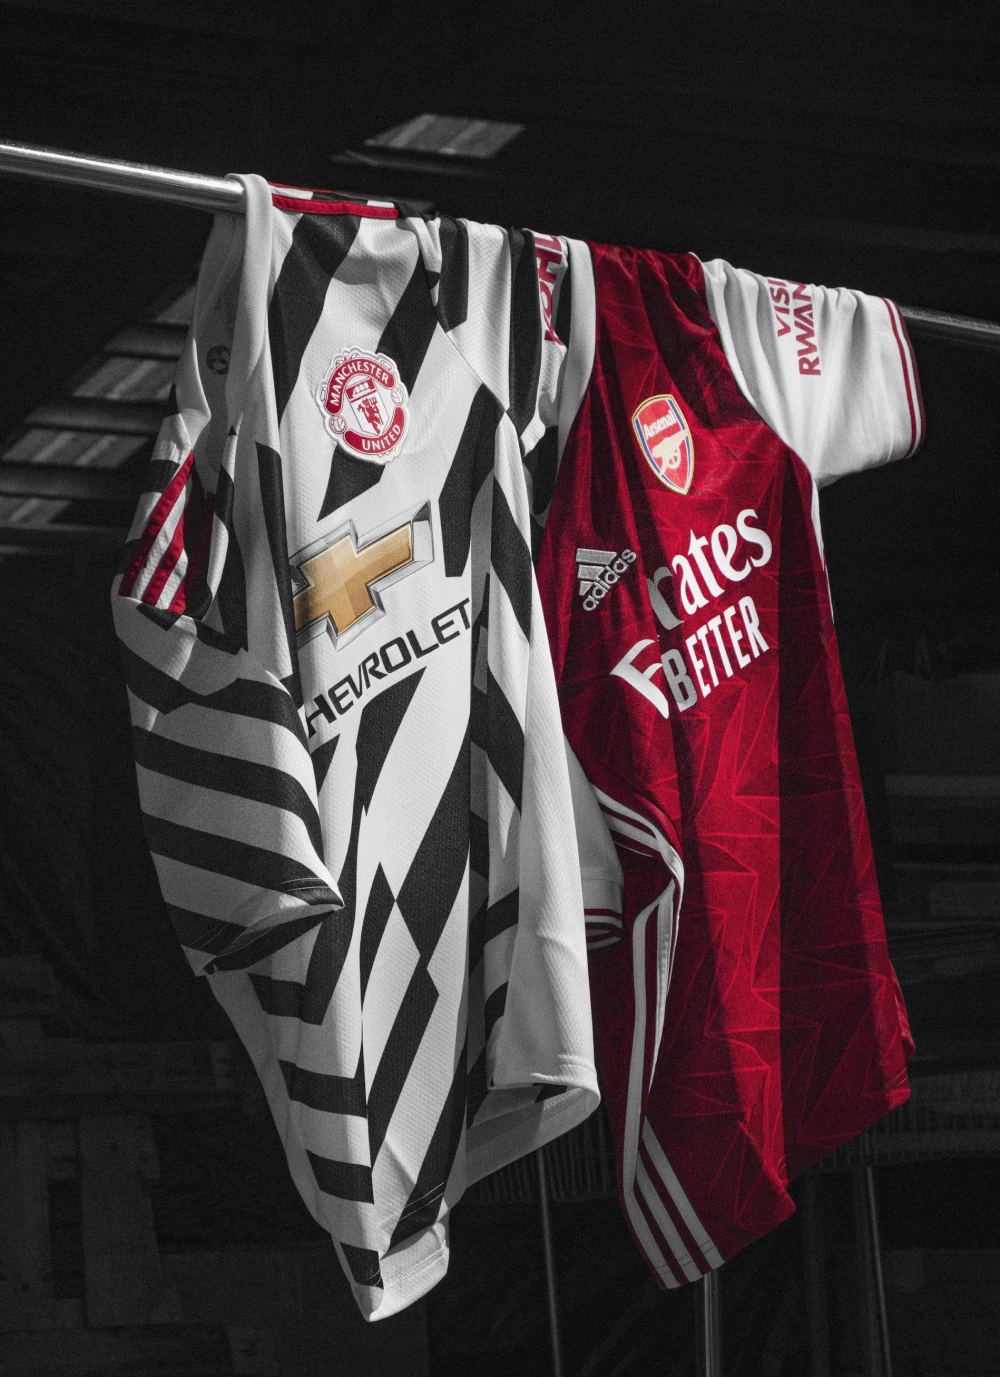 Baju Jersey Klub Sepak Bola Manchester United Dan Arsenal, Populer Di Kalangan Pecinta Olahraga.